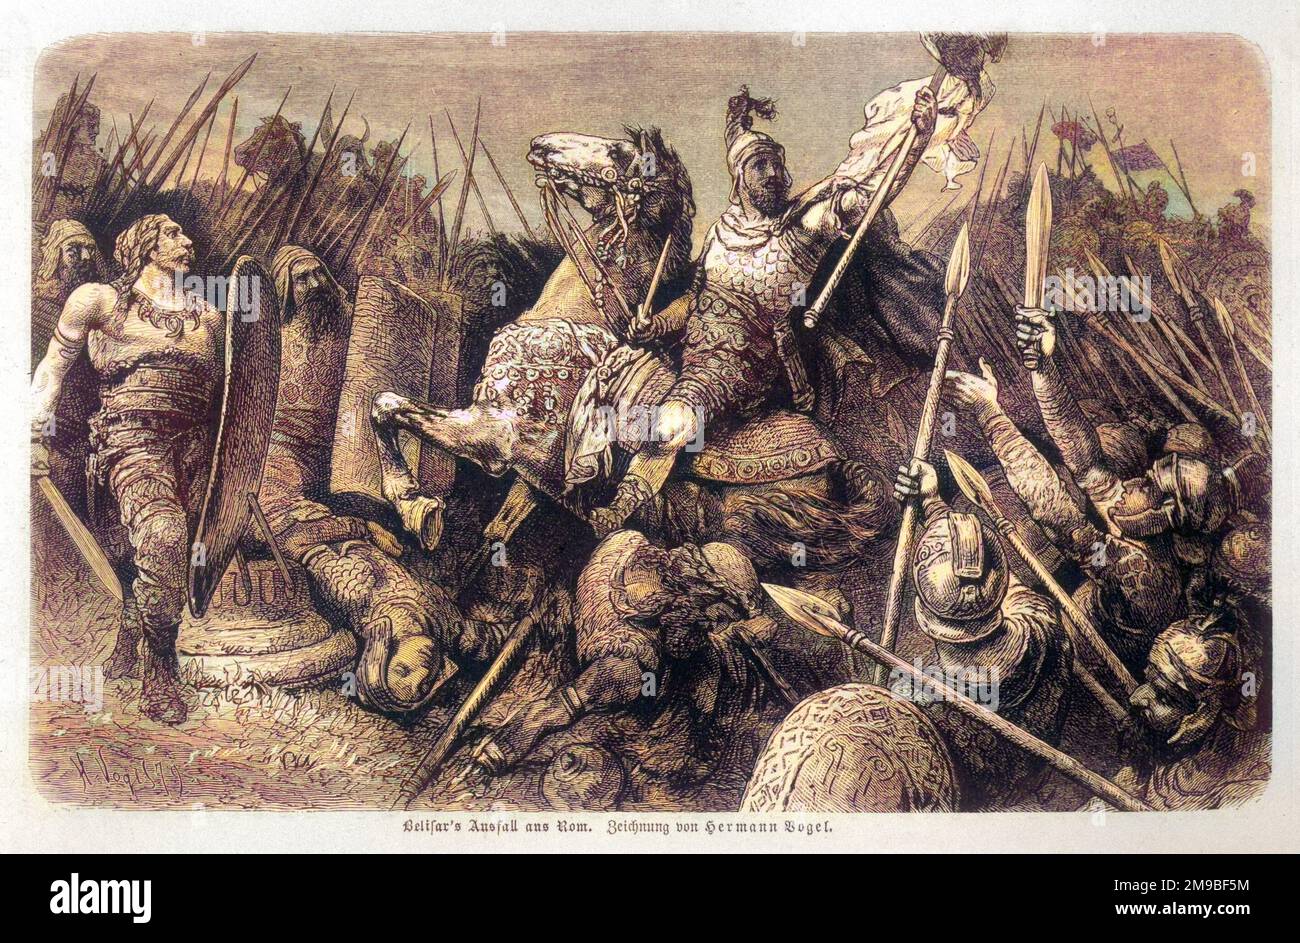 Der byzantinische General BELISARIUS besetzt Rom, nachdem er die Vandalen besiegt, die Ostrogoten unterdrückt und Sizilien erobert hat Stockfoto